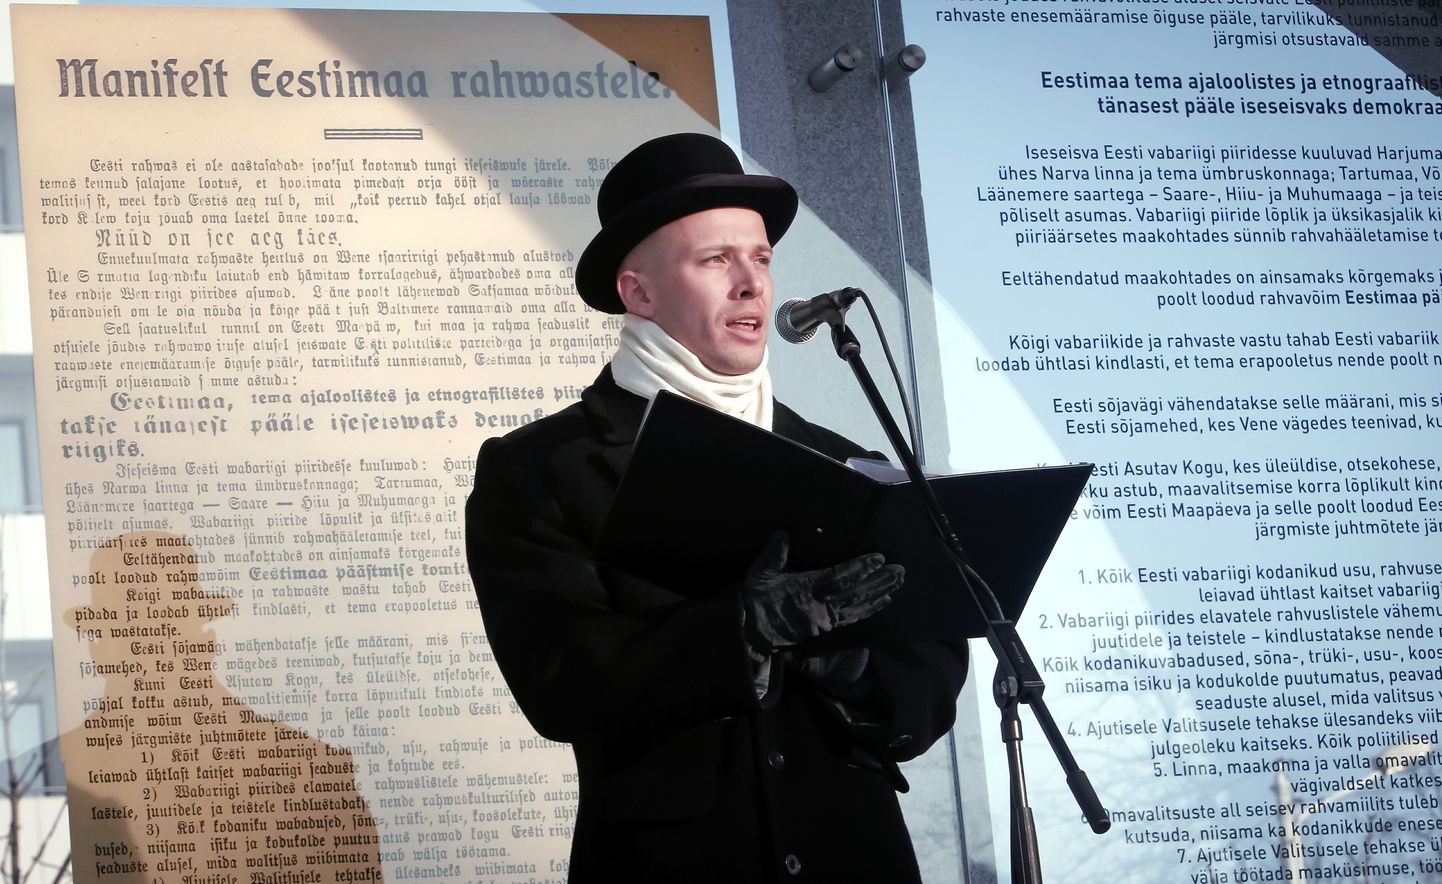 Nii on Pärnus traditsiooniks saanud manifest igal aastal 23. veebruaril ette lugeda. Seekord tegi seda näitleja Sten Karpov.